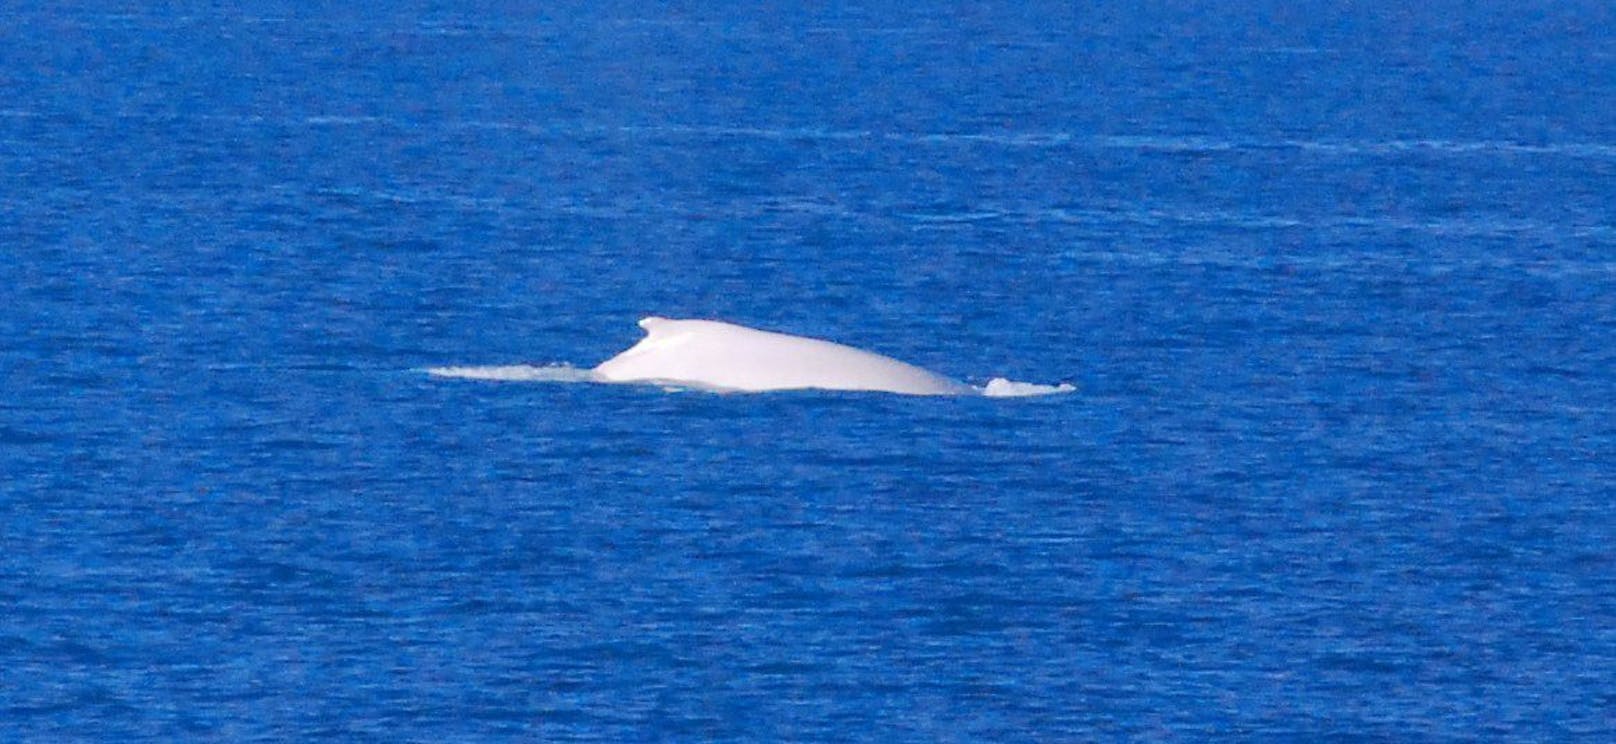 Bei "Migaloo" handelt es sich um eine sehr seltenen, weißen Buckelwal.